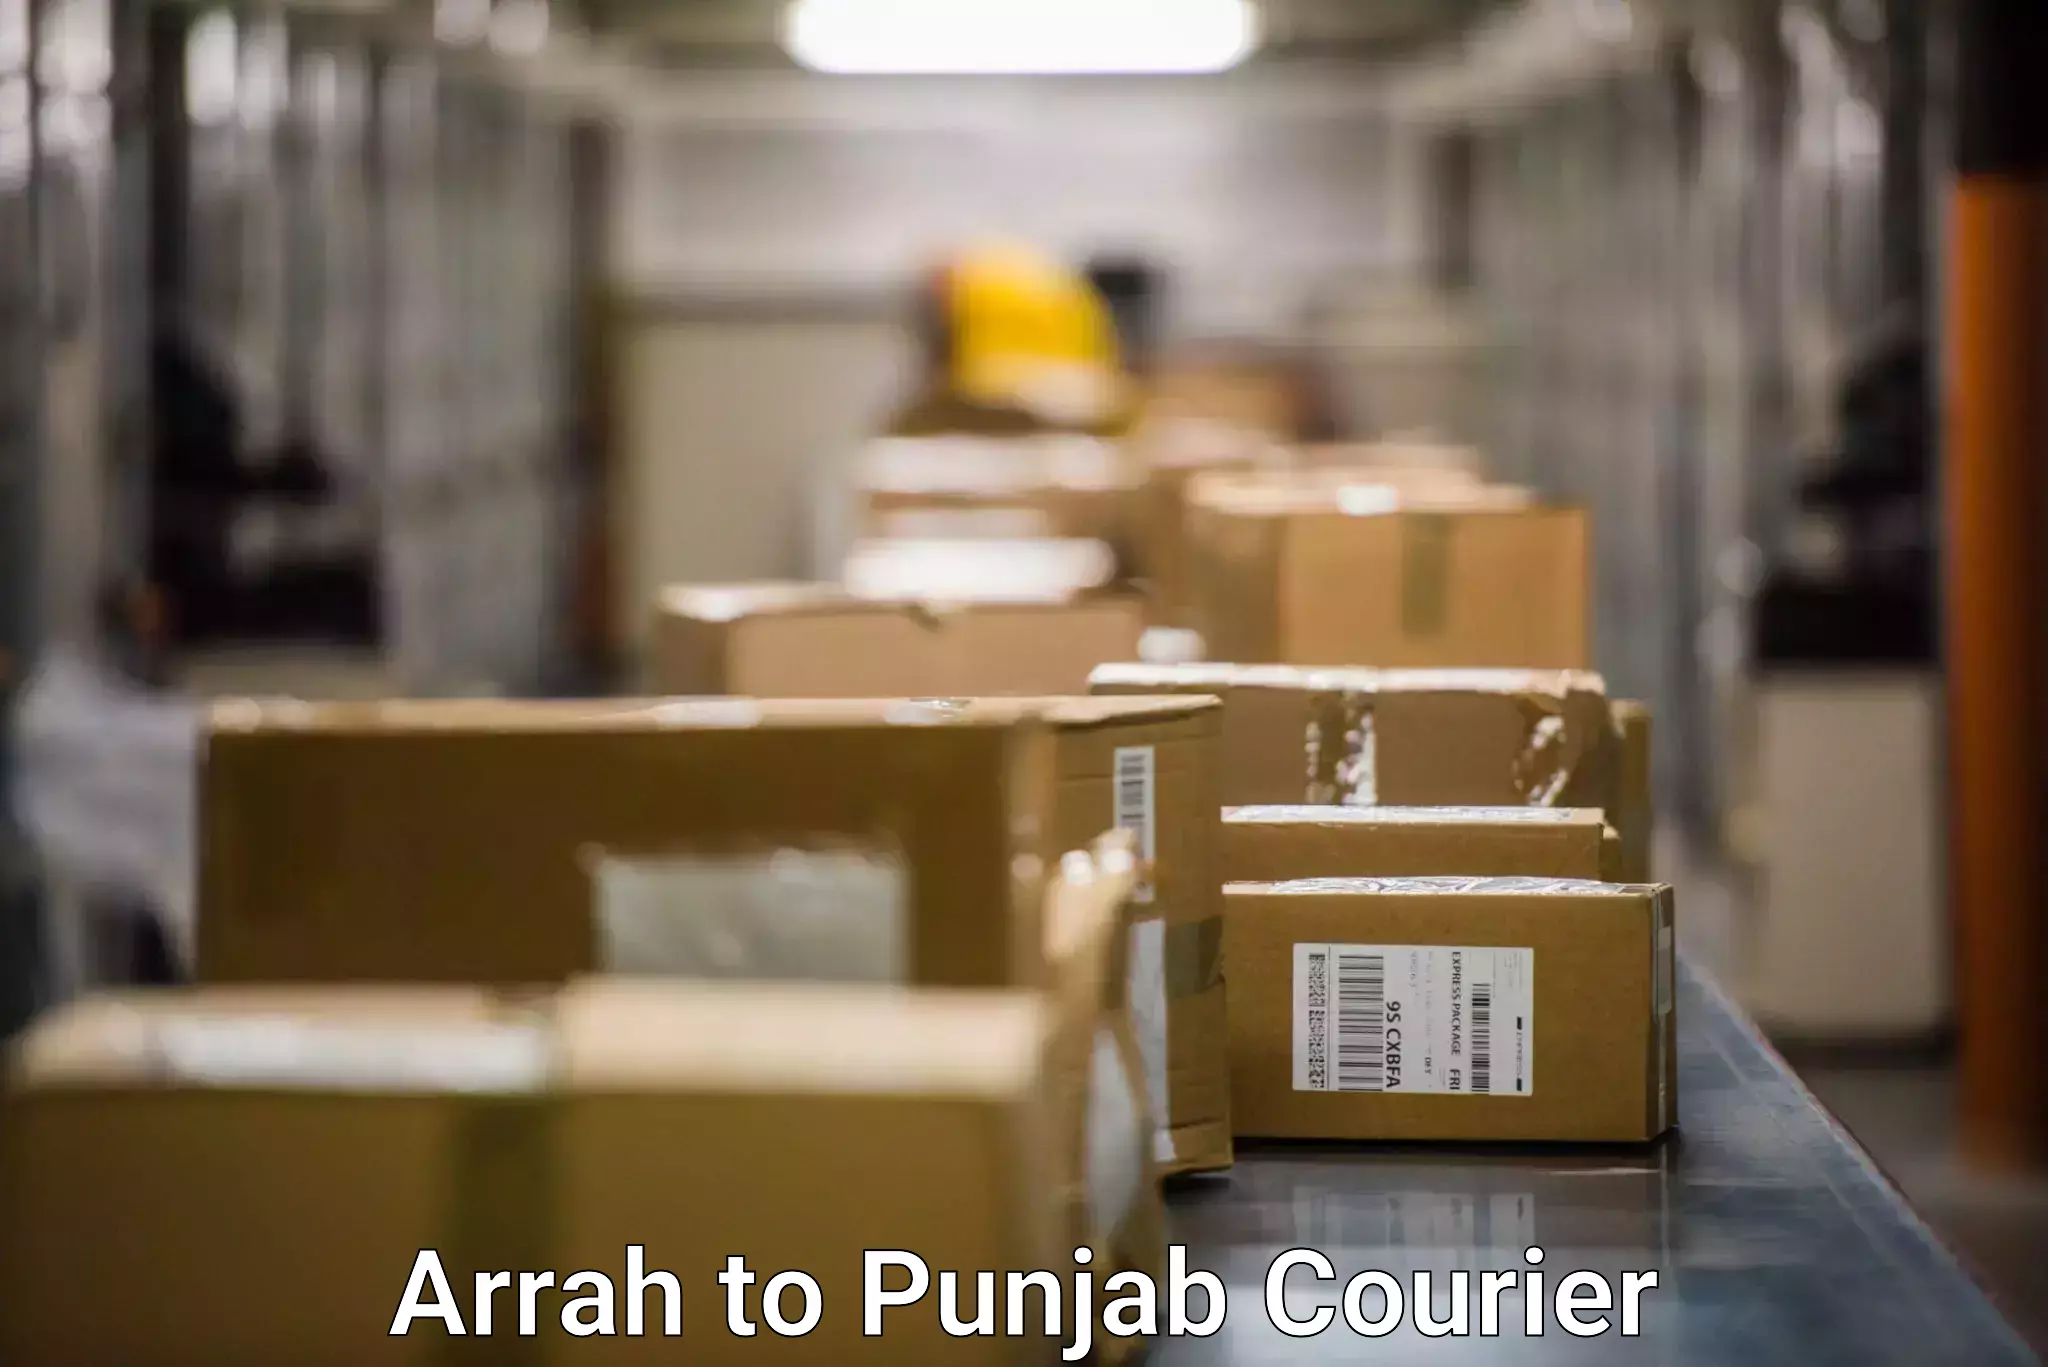 24-hour courier service Arrah to Kapurthala